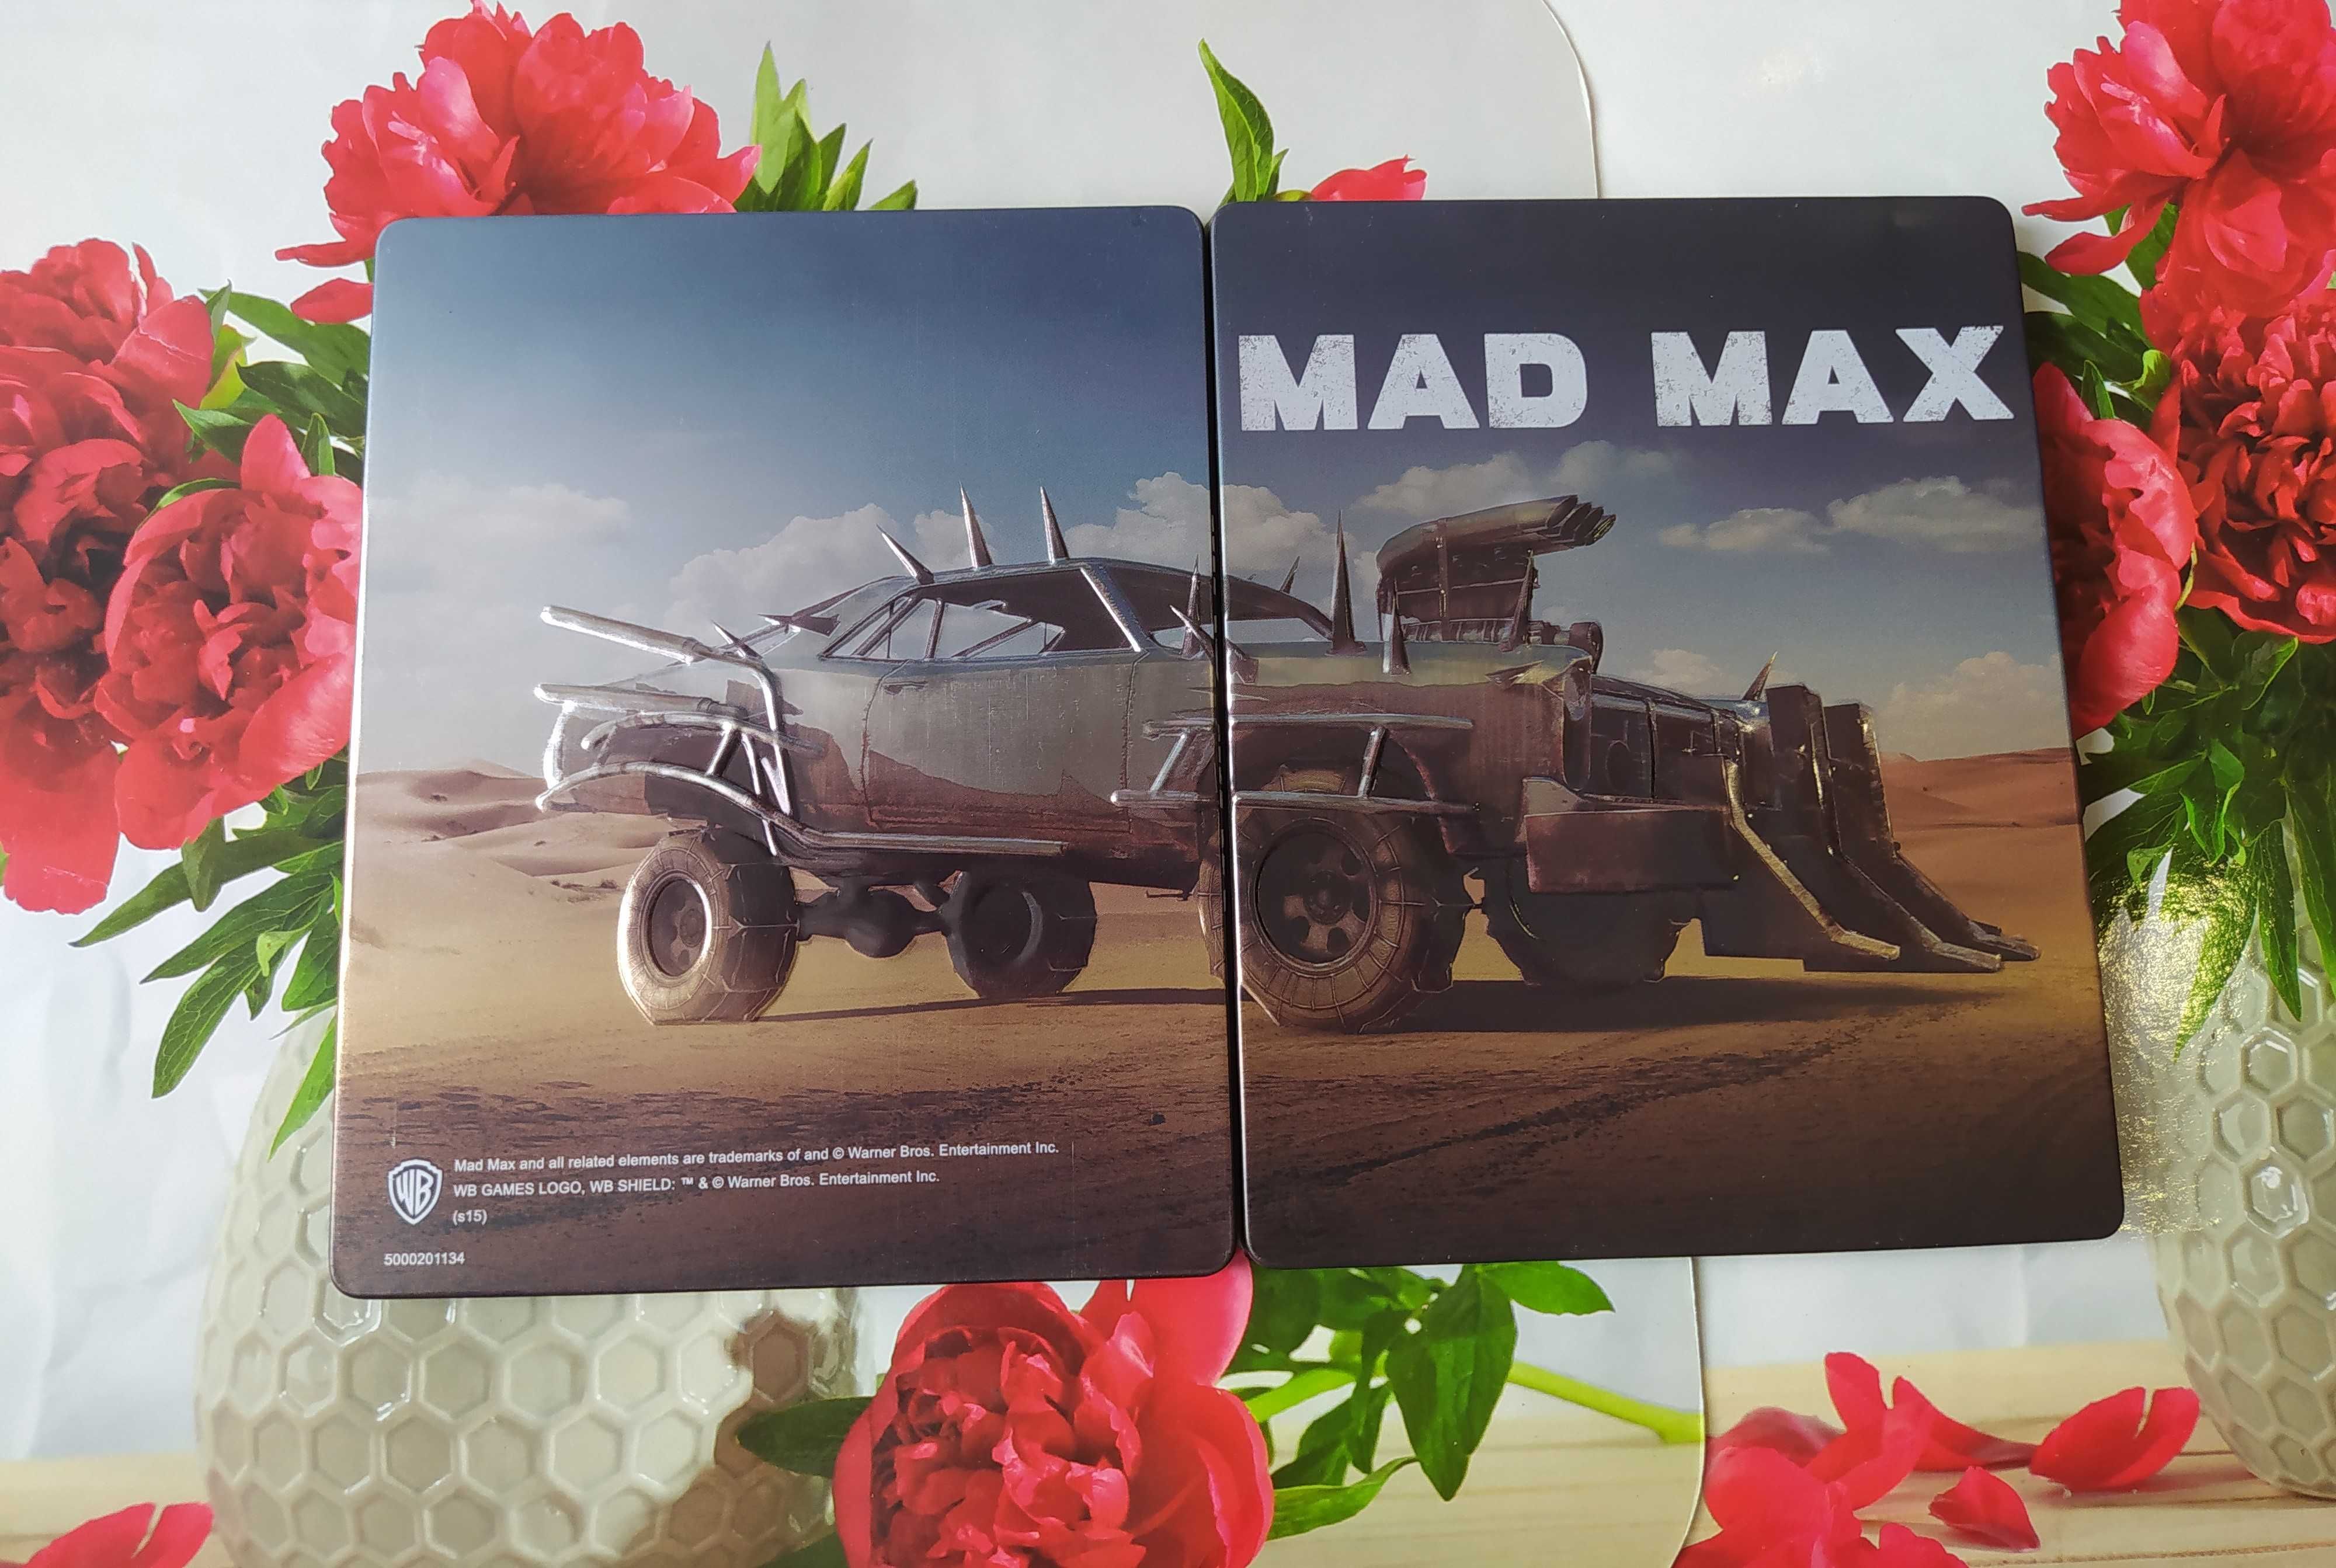 Mad Max Ripper Edition STEELBOOK ! PL ! PS4 ! Unikat